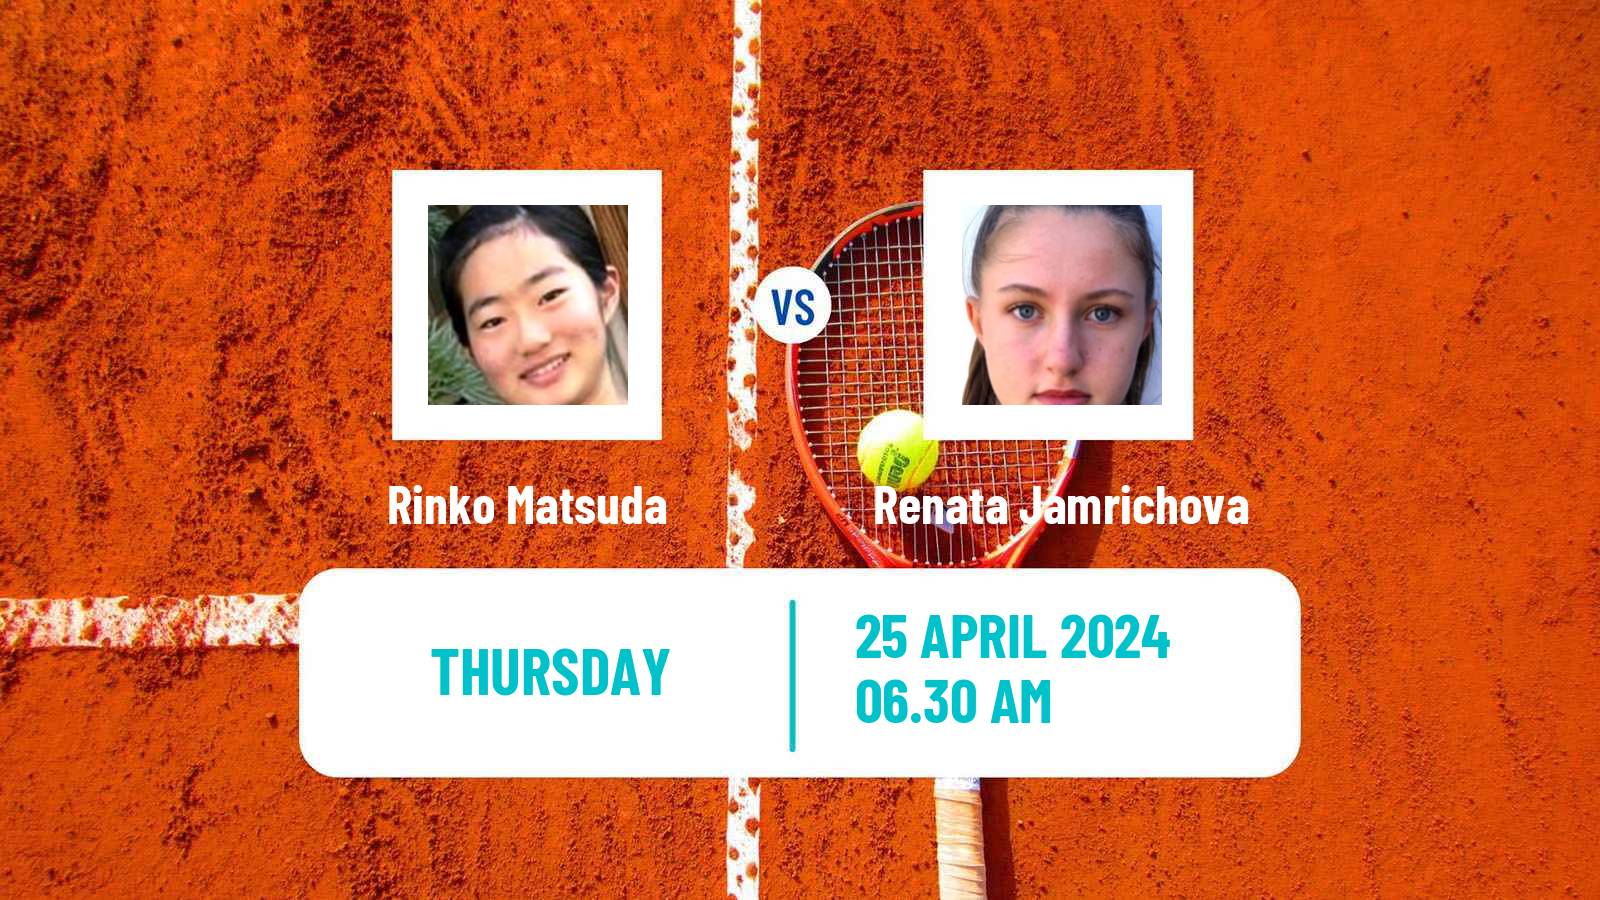 Tennis ITF W15 Telde 4 Women Rinko Matsuda - Renata Jamrichova